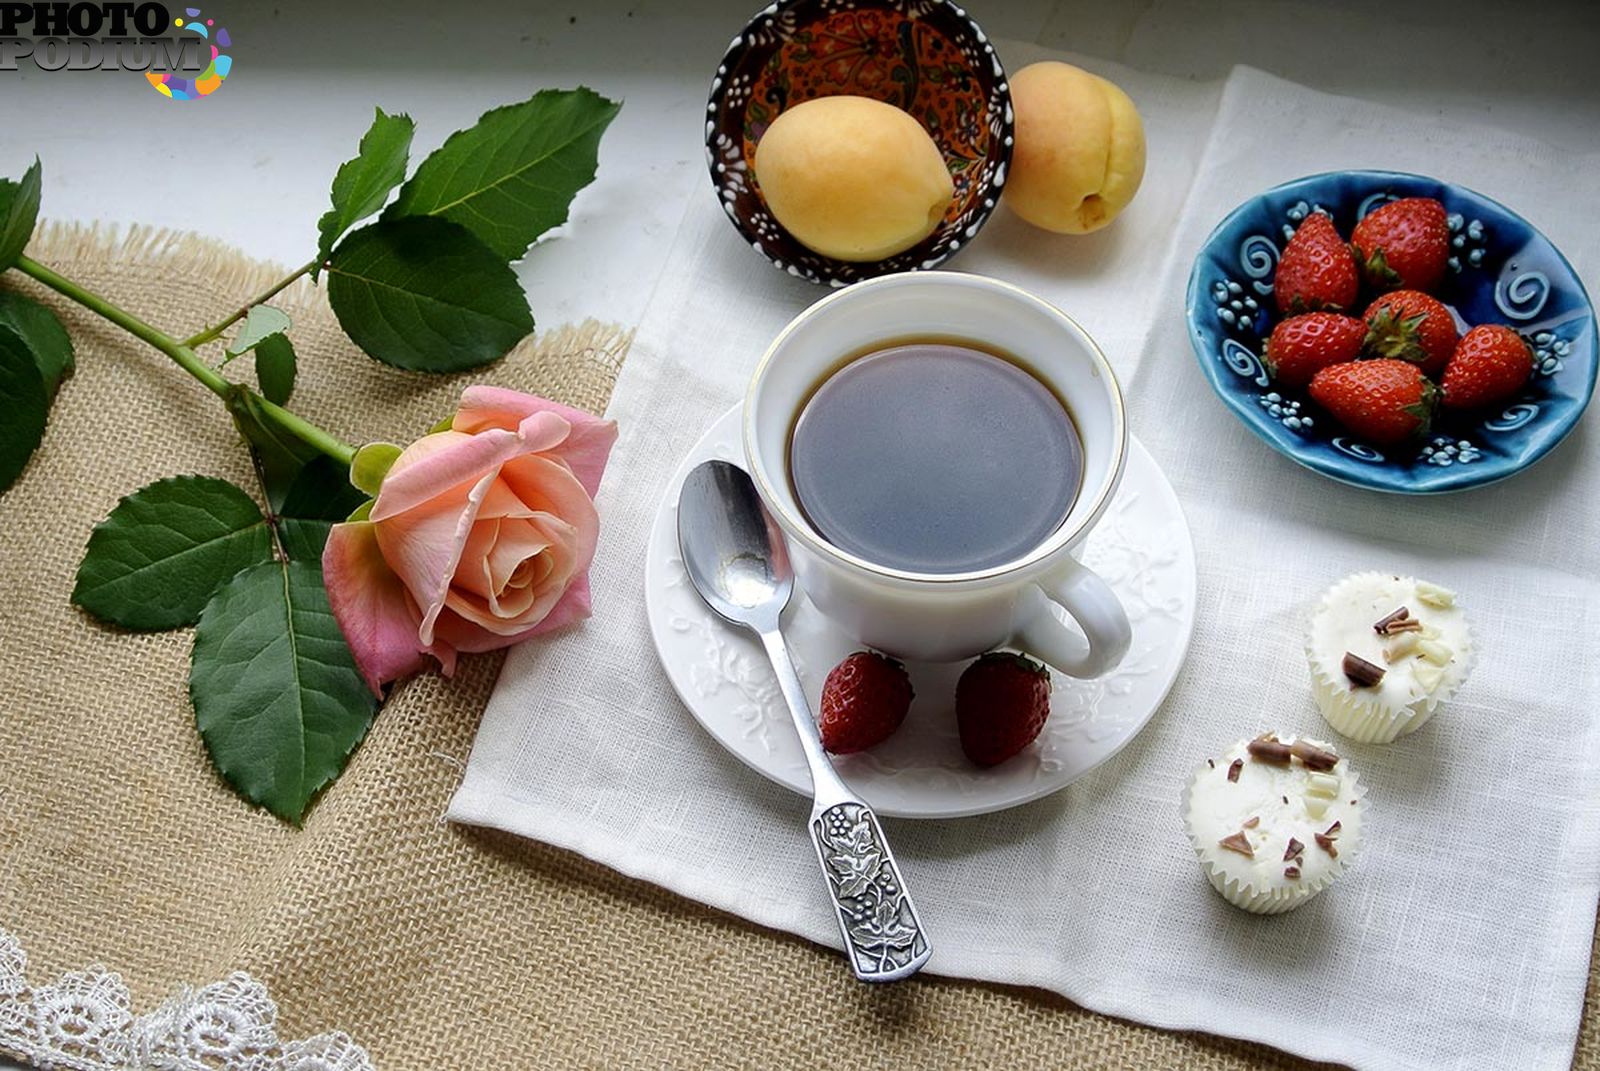 Это было красивое утро. Завтрак с клубникой и кофе. Доброе утро кофе. Клубника кофе утро. Доброе утро красивый завтрак.